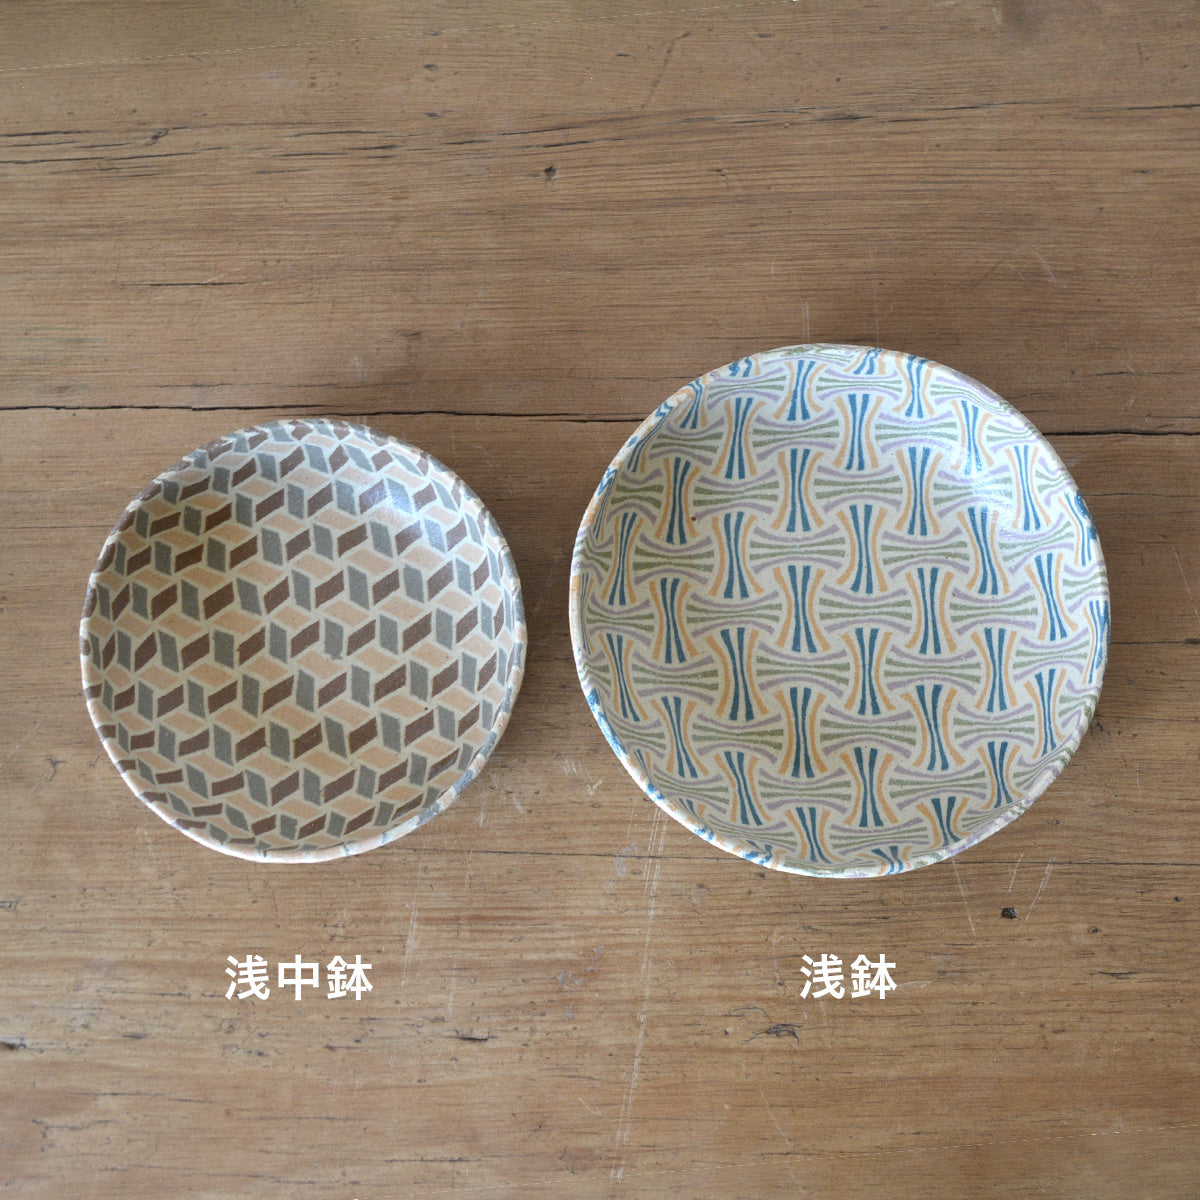 irodori窯 / 浅鉢